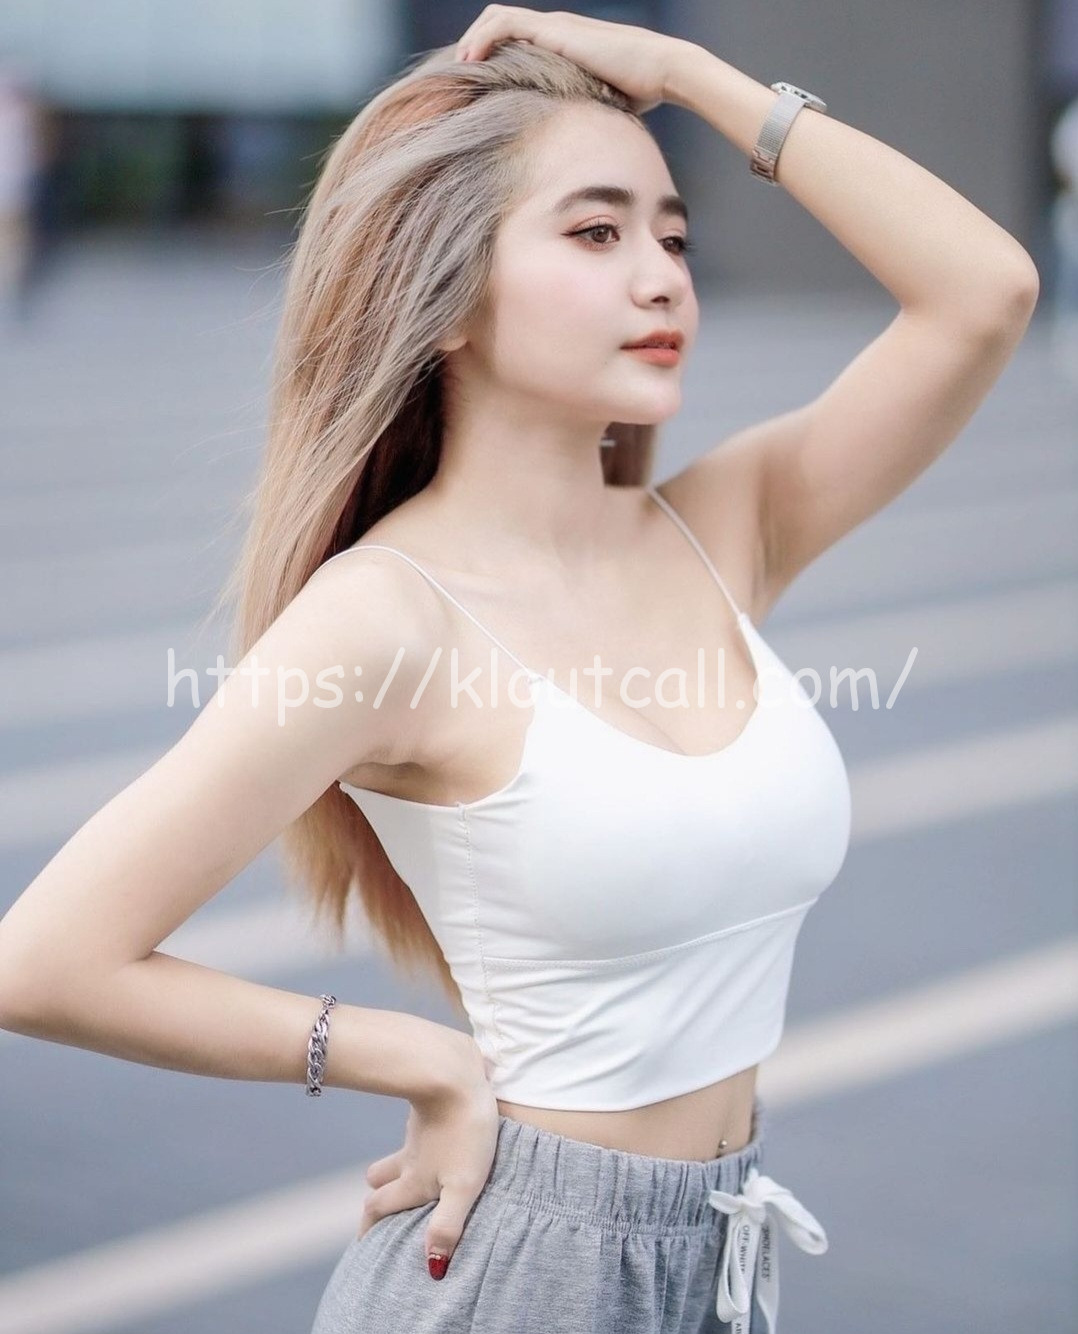 MiyaNEWBABE1 Female,Tall,Blonde, 40kg,Thai